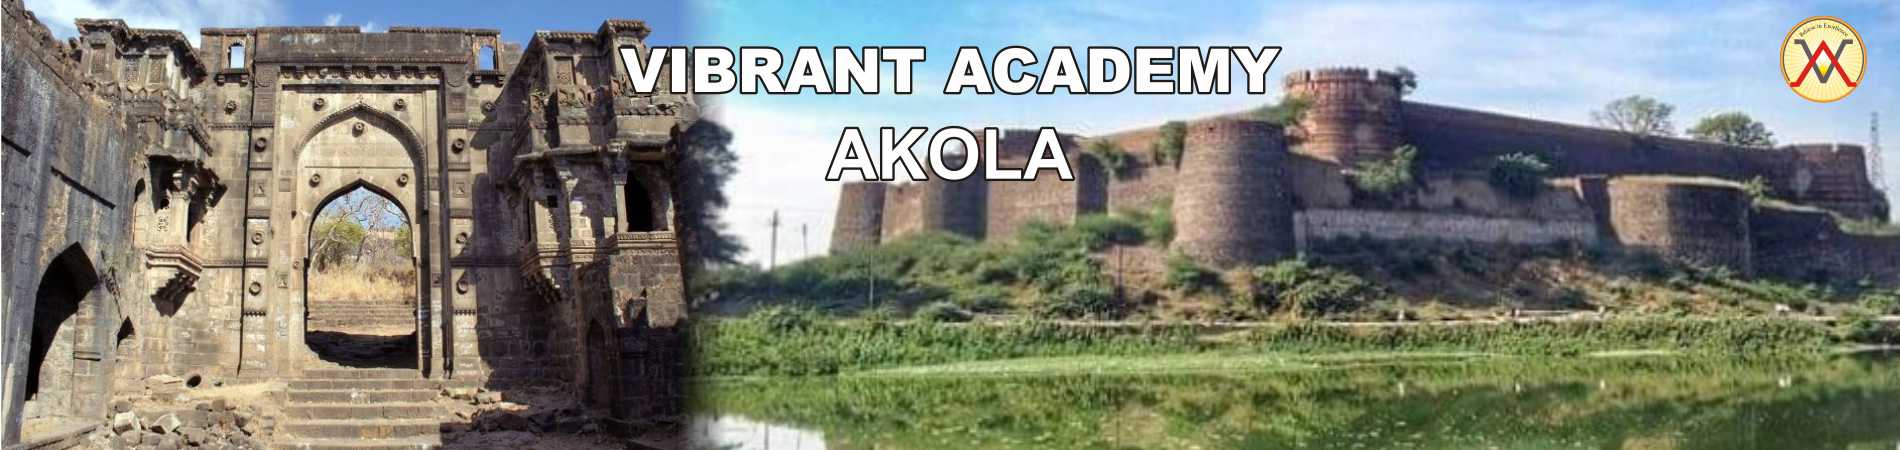 Vibrant Academy Akola